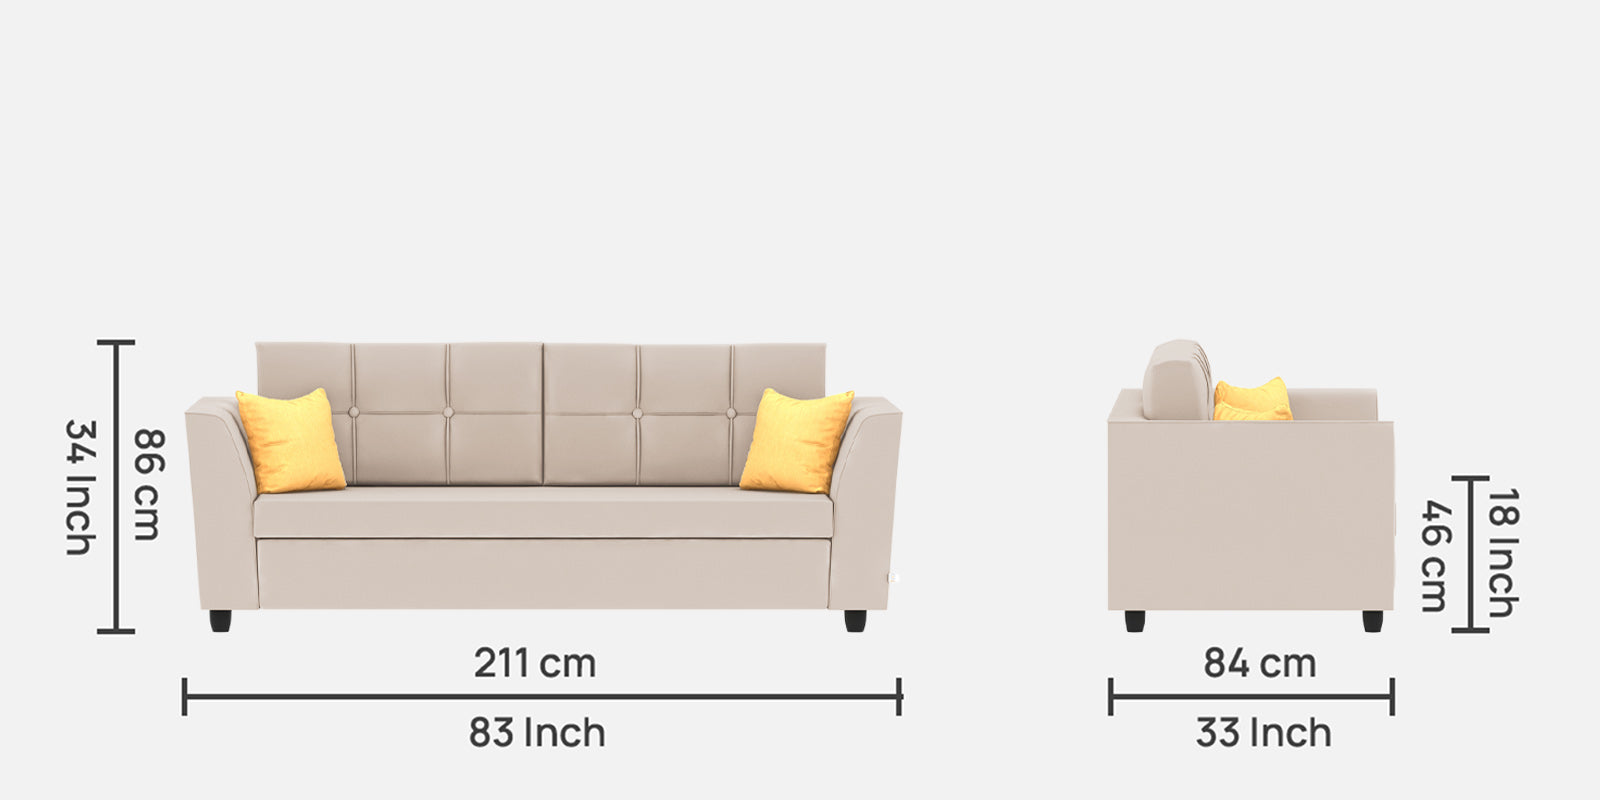 Nestin Velvet 3 Seater Sofa in Camel Beige Colour